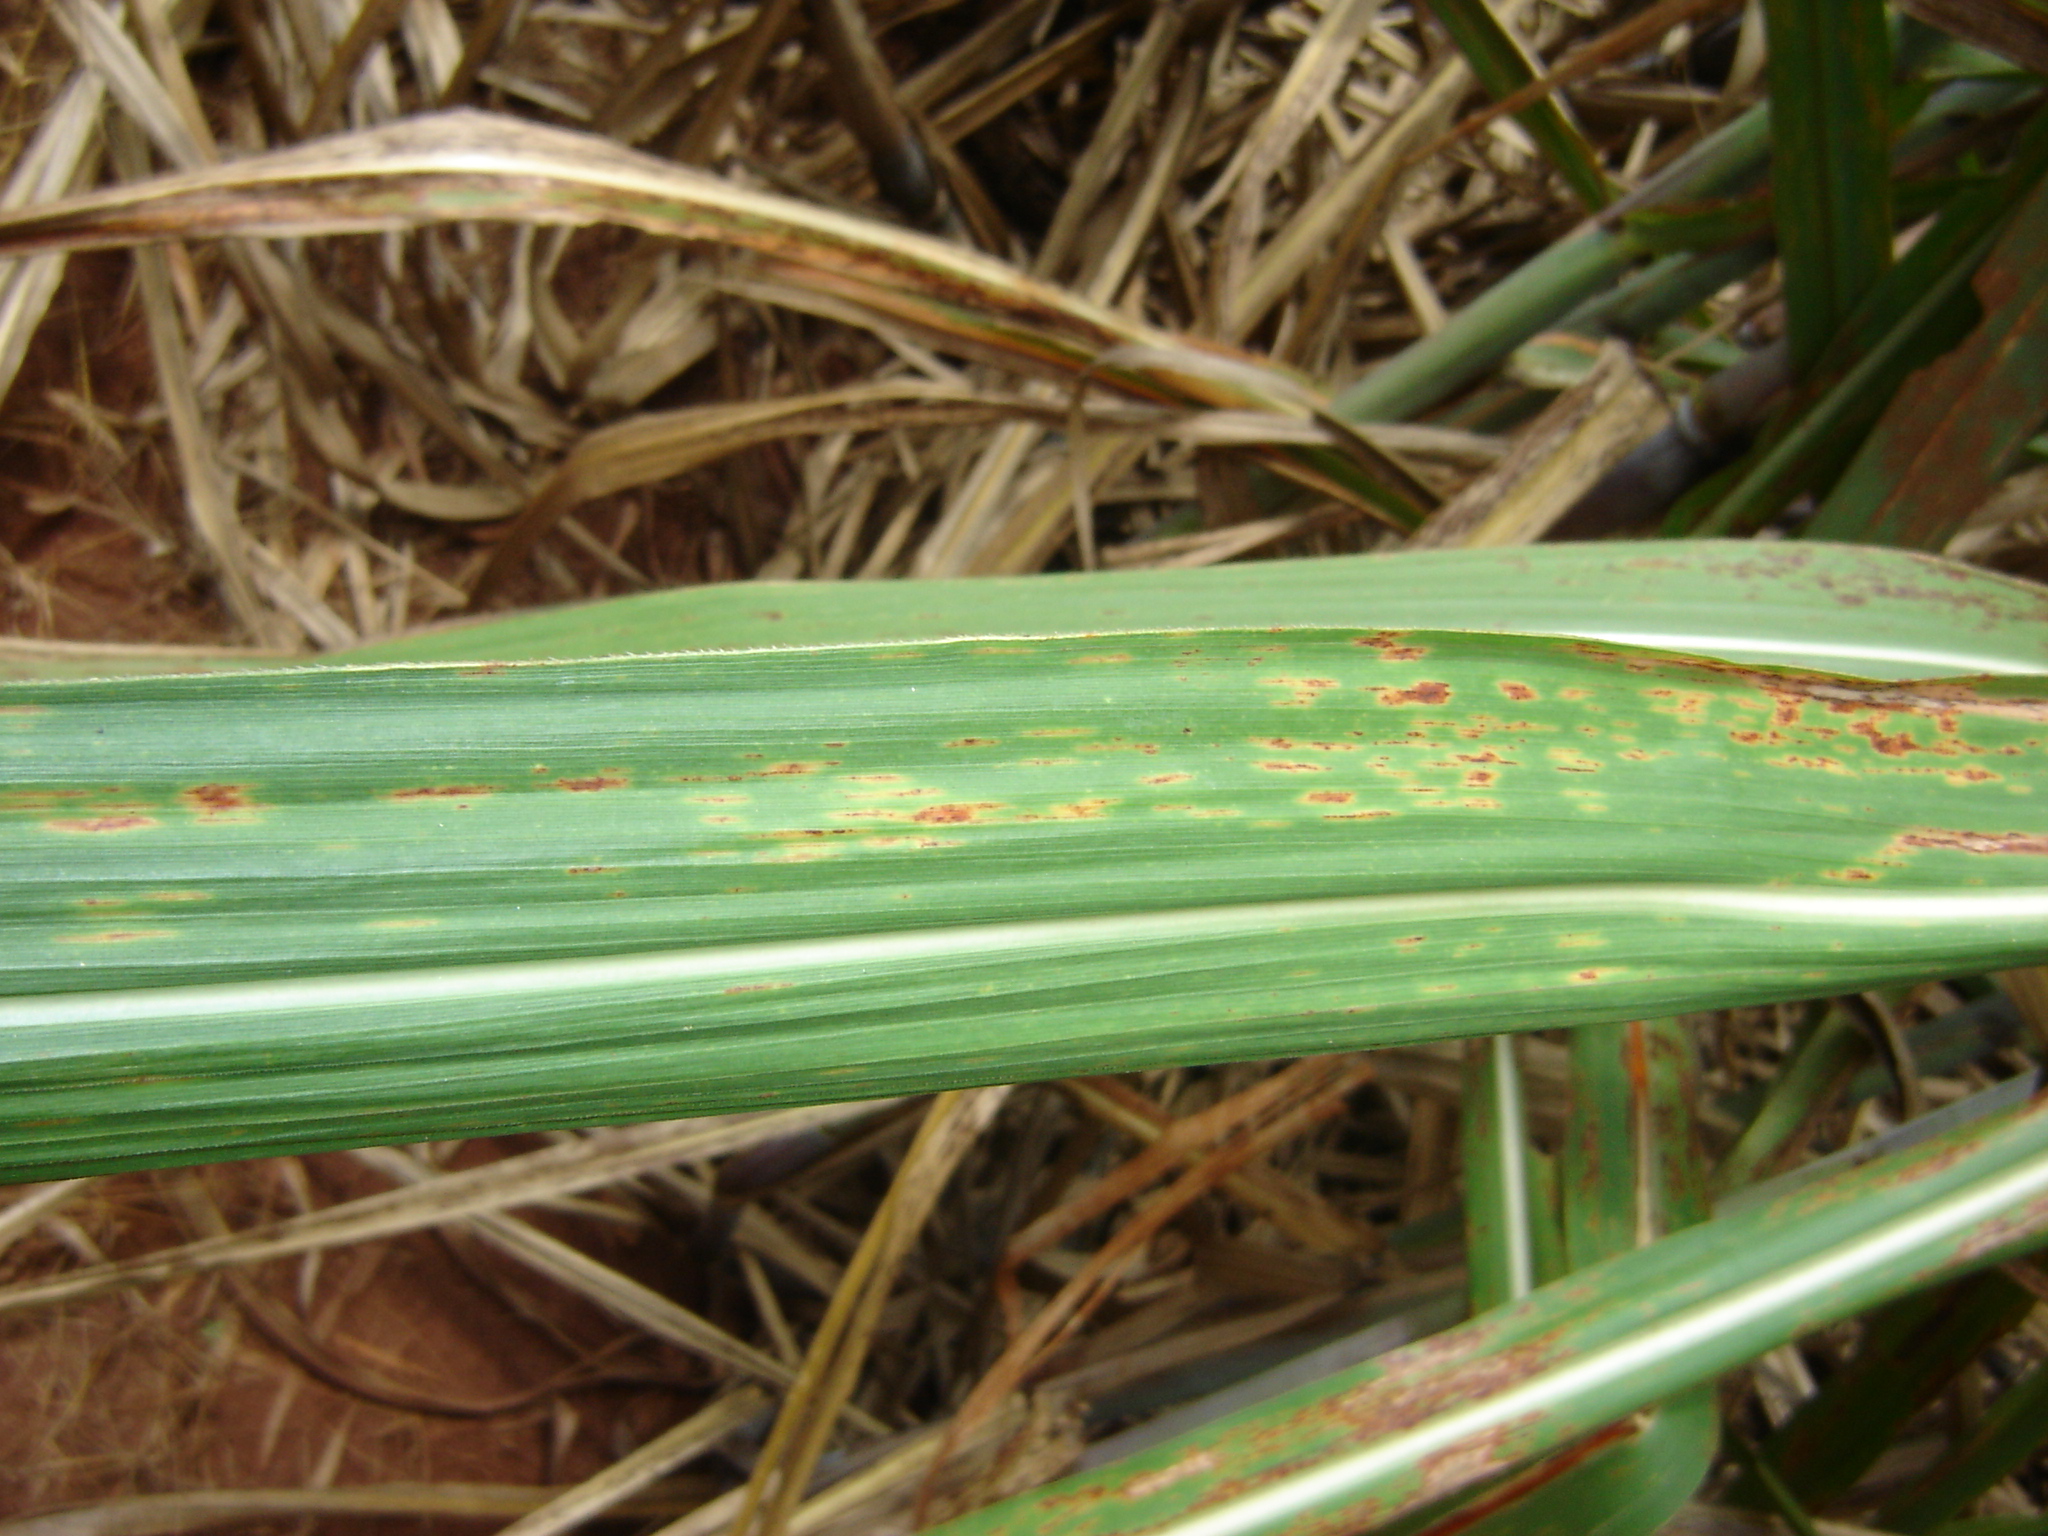 Figura1. Sintomas de ferrugem alaranjada em cana-de-açúcar causada pelo fungo Puccinia kuehnii